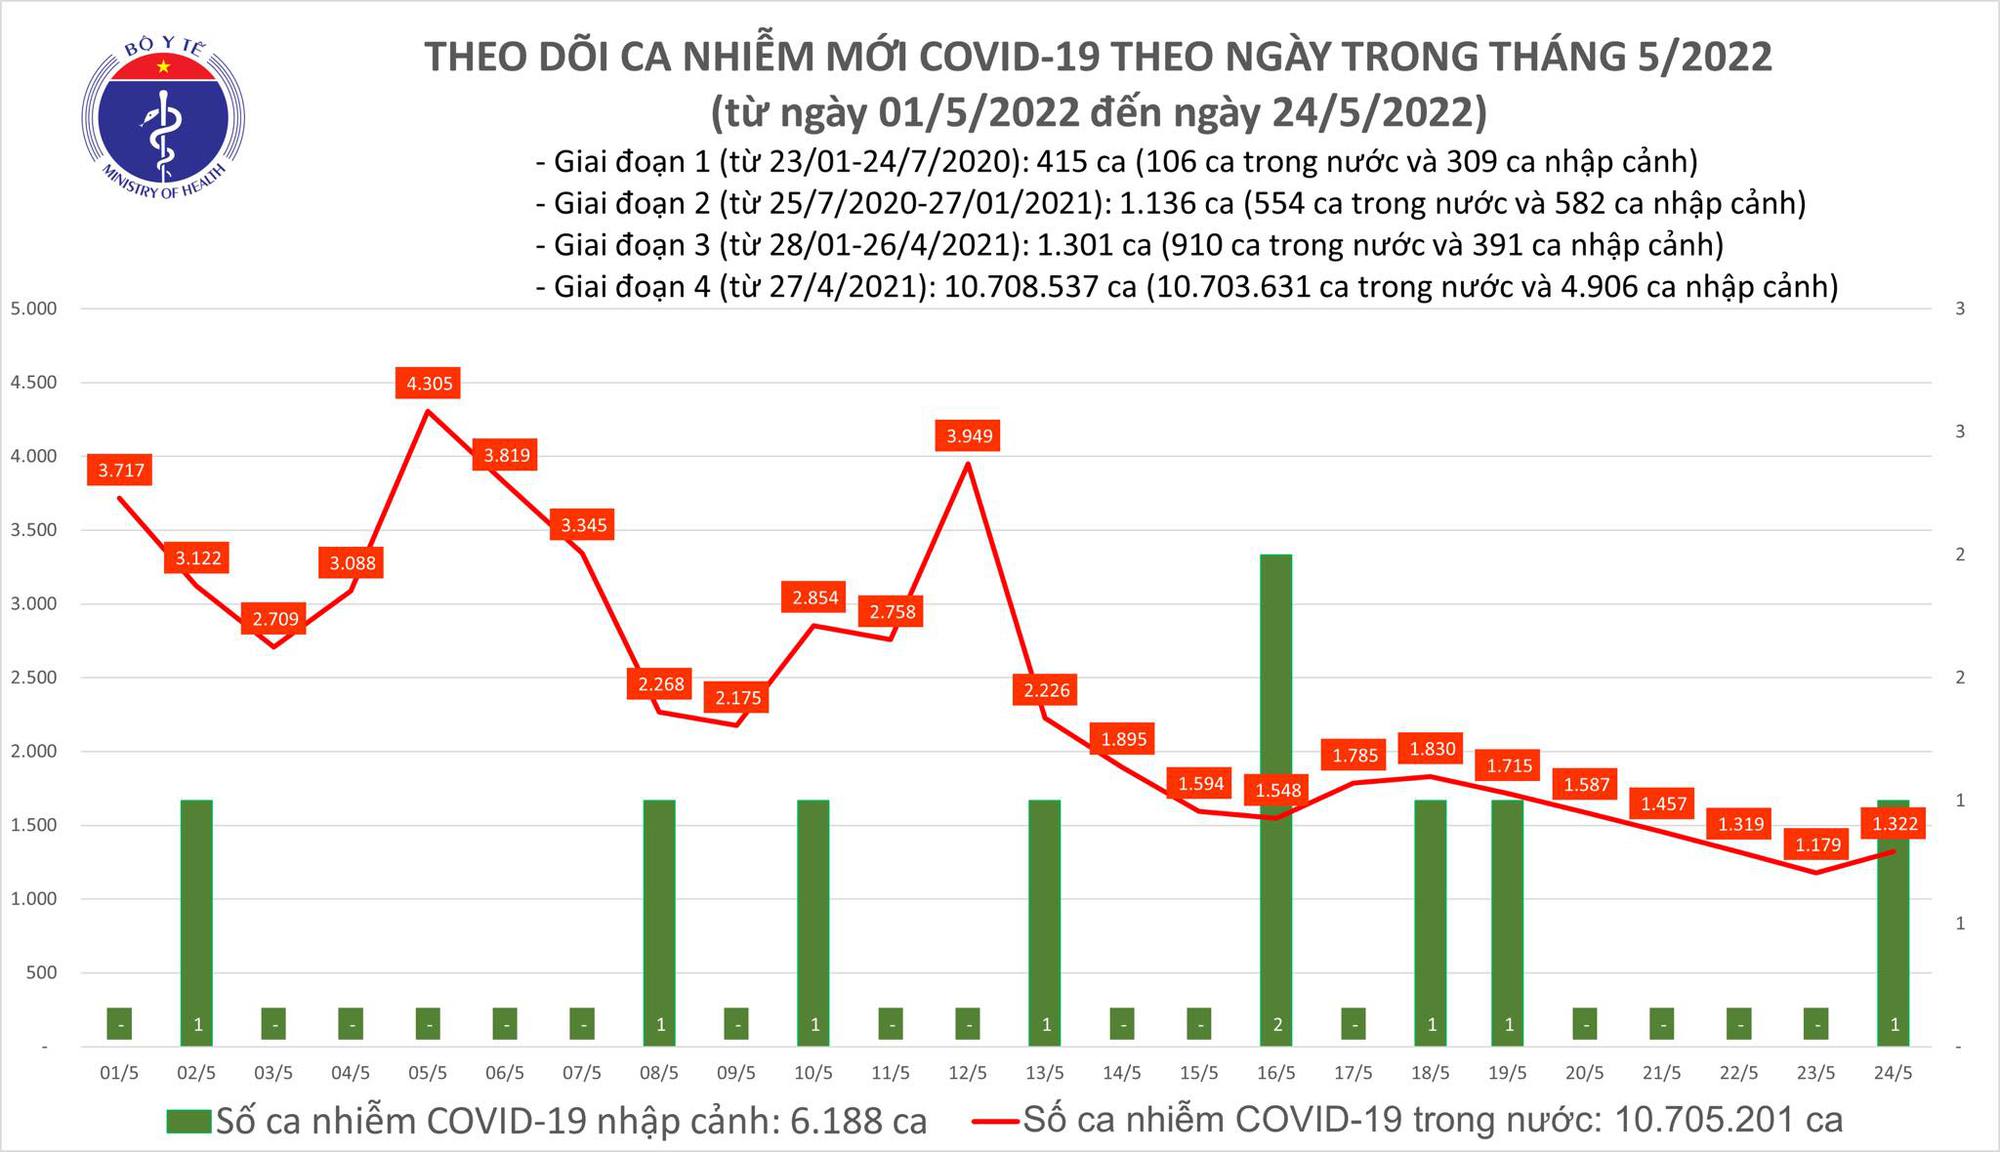 Ngày 24/5: Có 1.323 ca COVID-19; không F0 nào tử vong, chỉ còn 216 F0 nặng